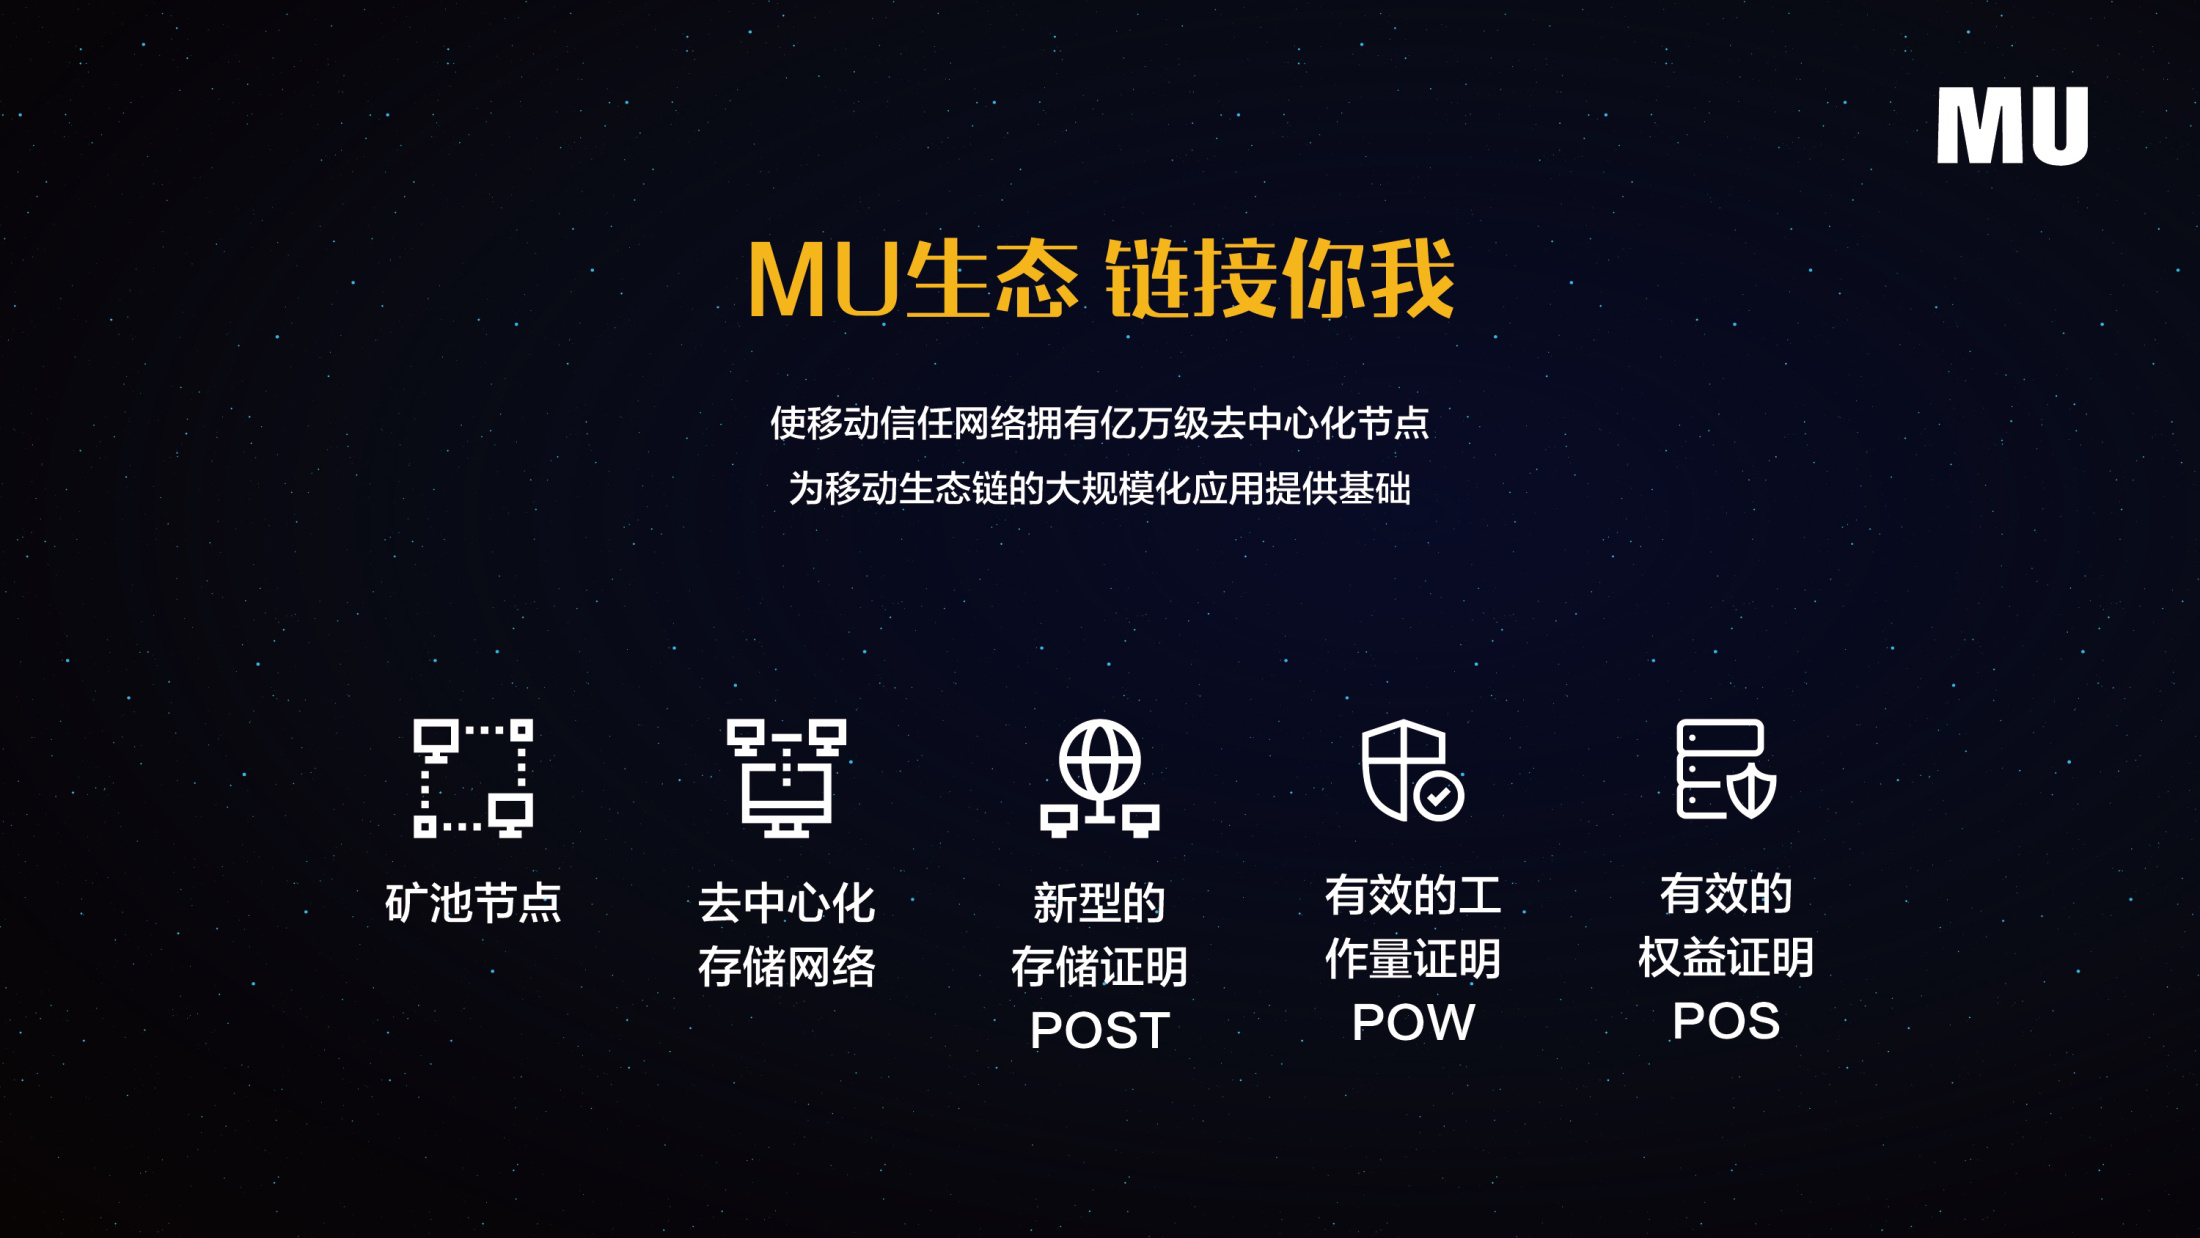 MU创世版区块链手机面市，引领区块链应用新风尚